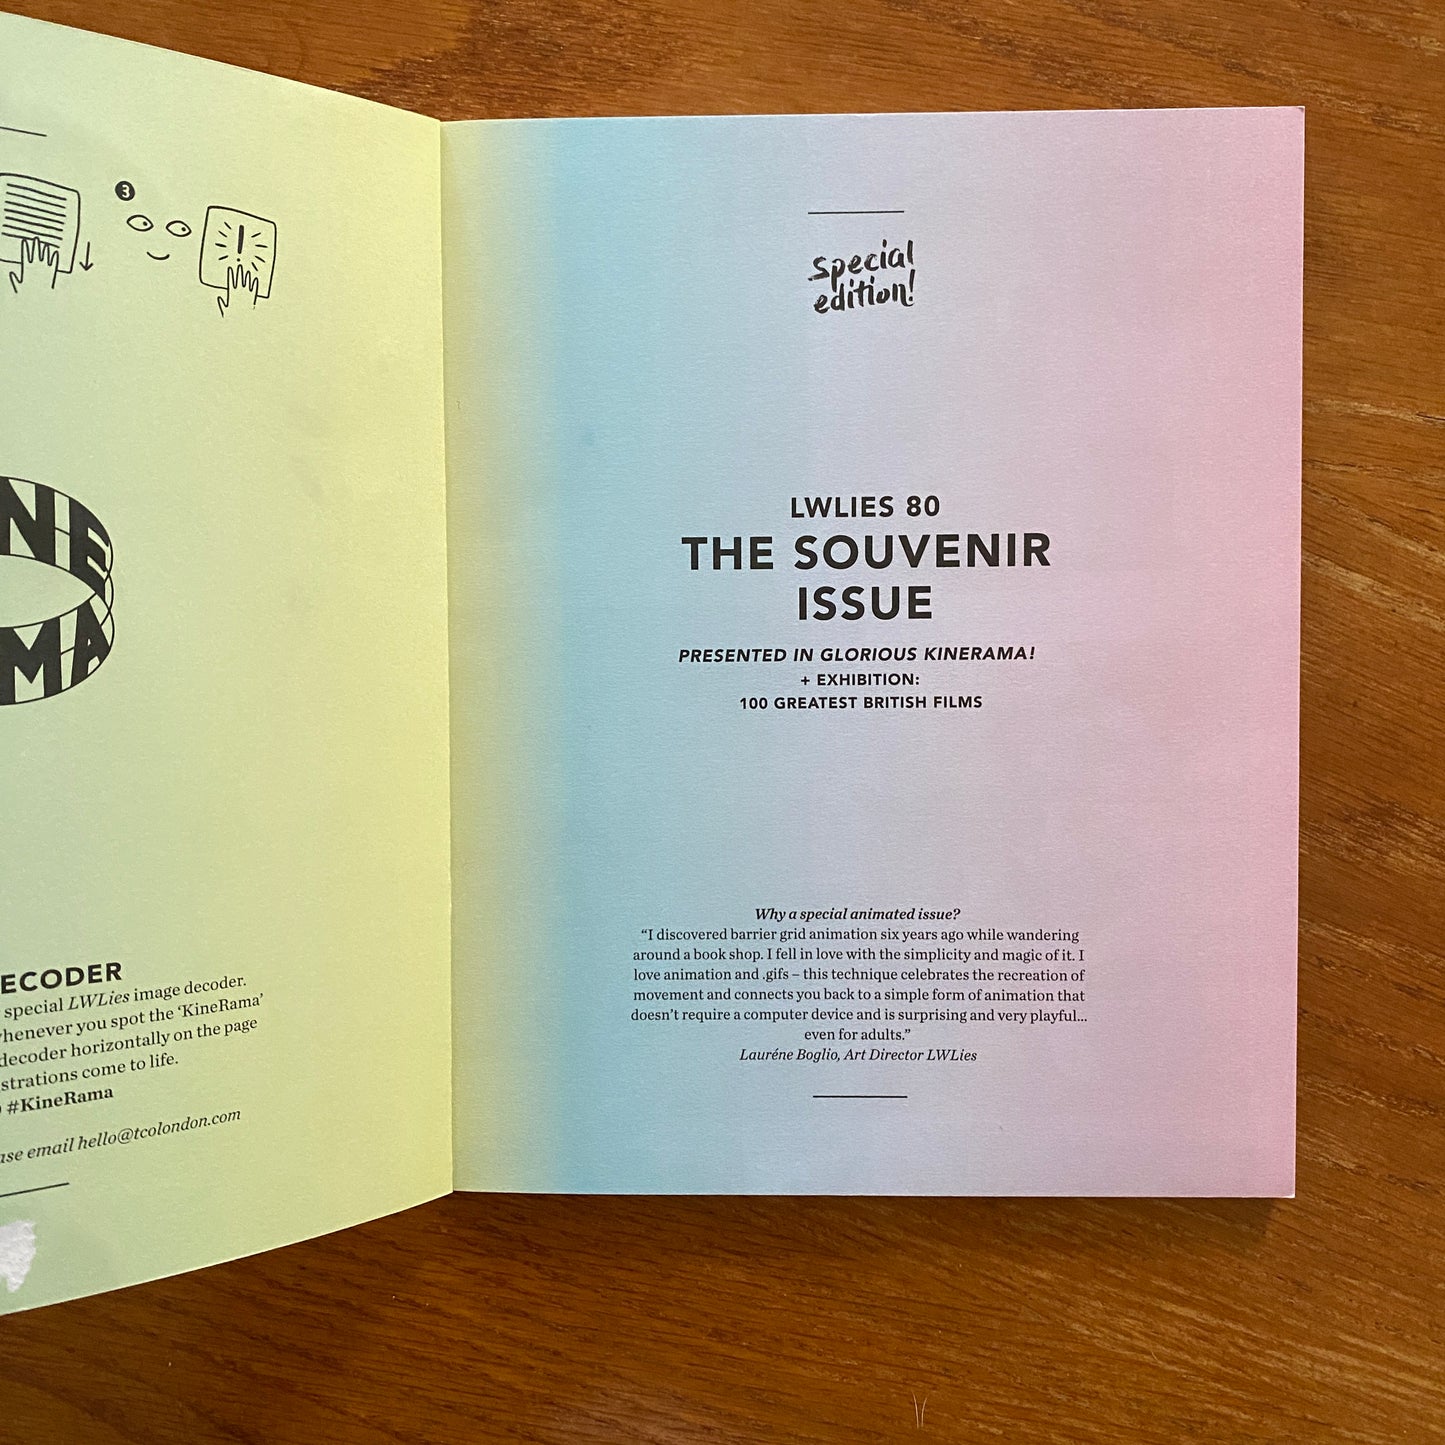 Issue 80 - The Souvenir